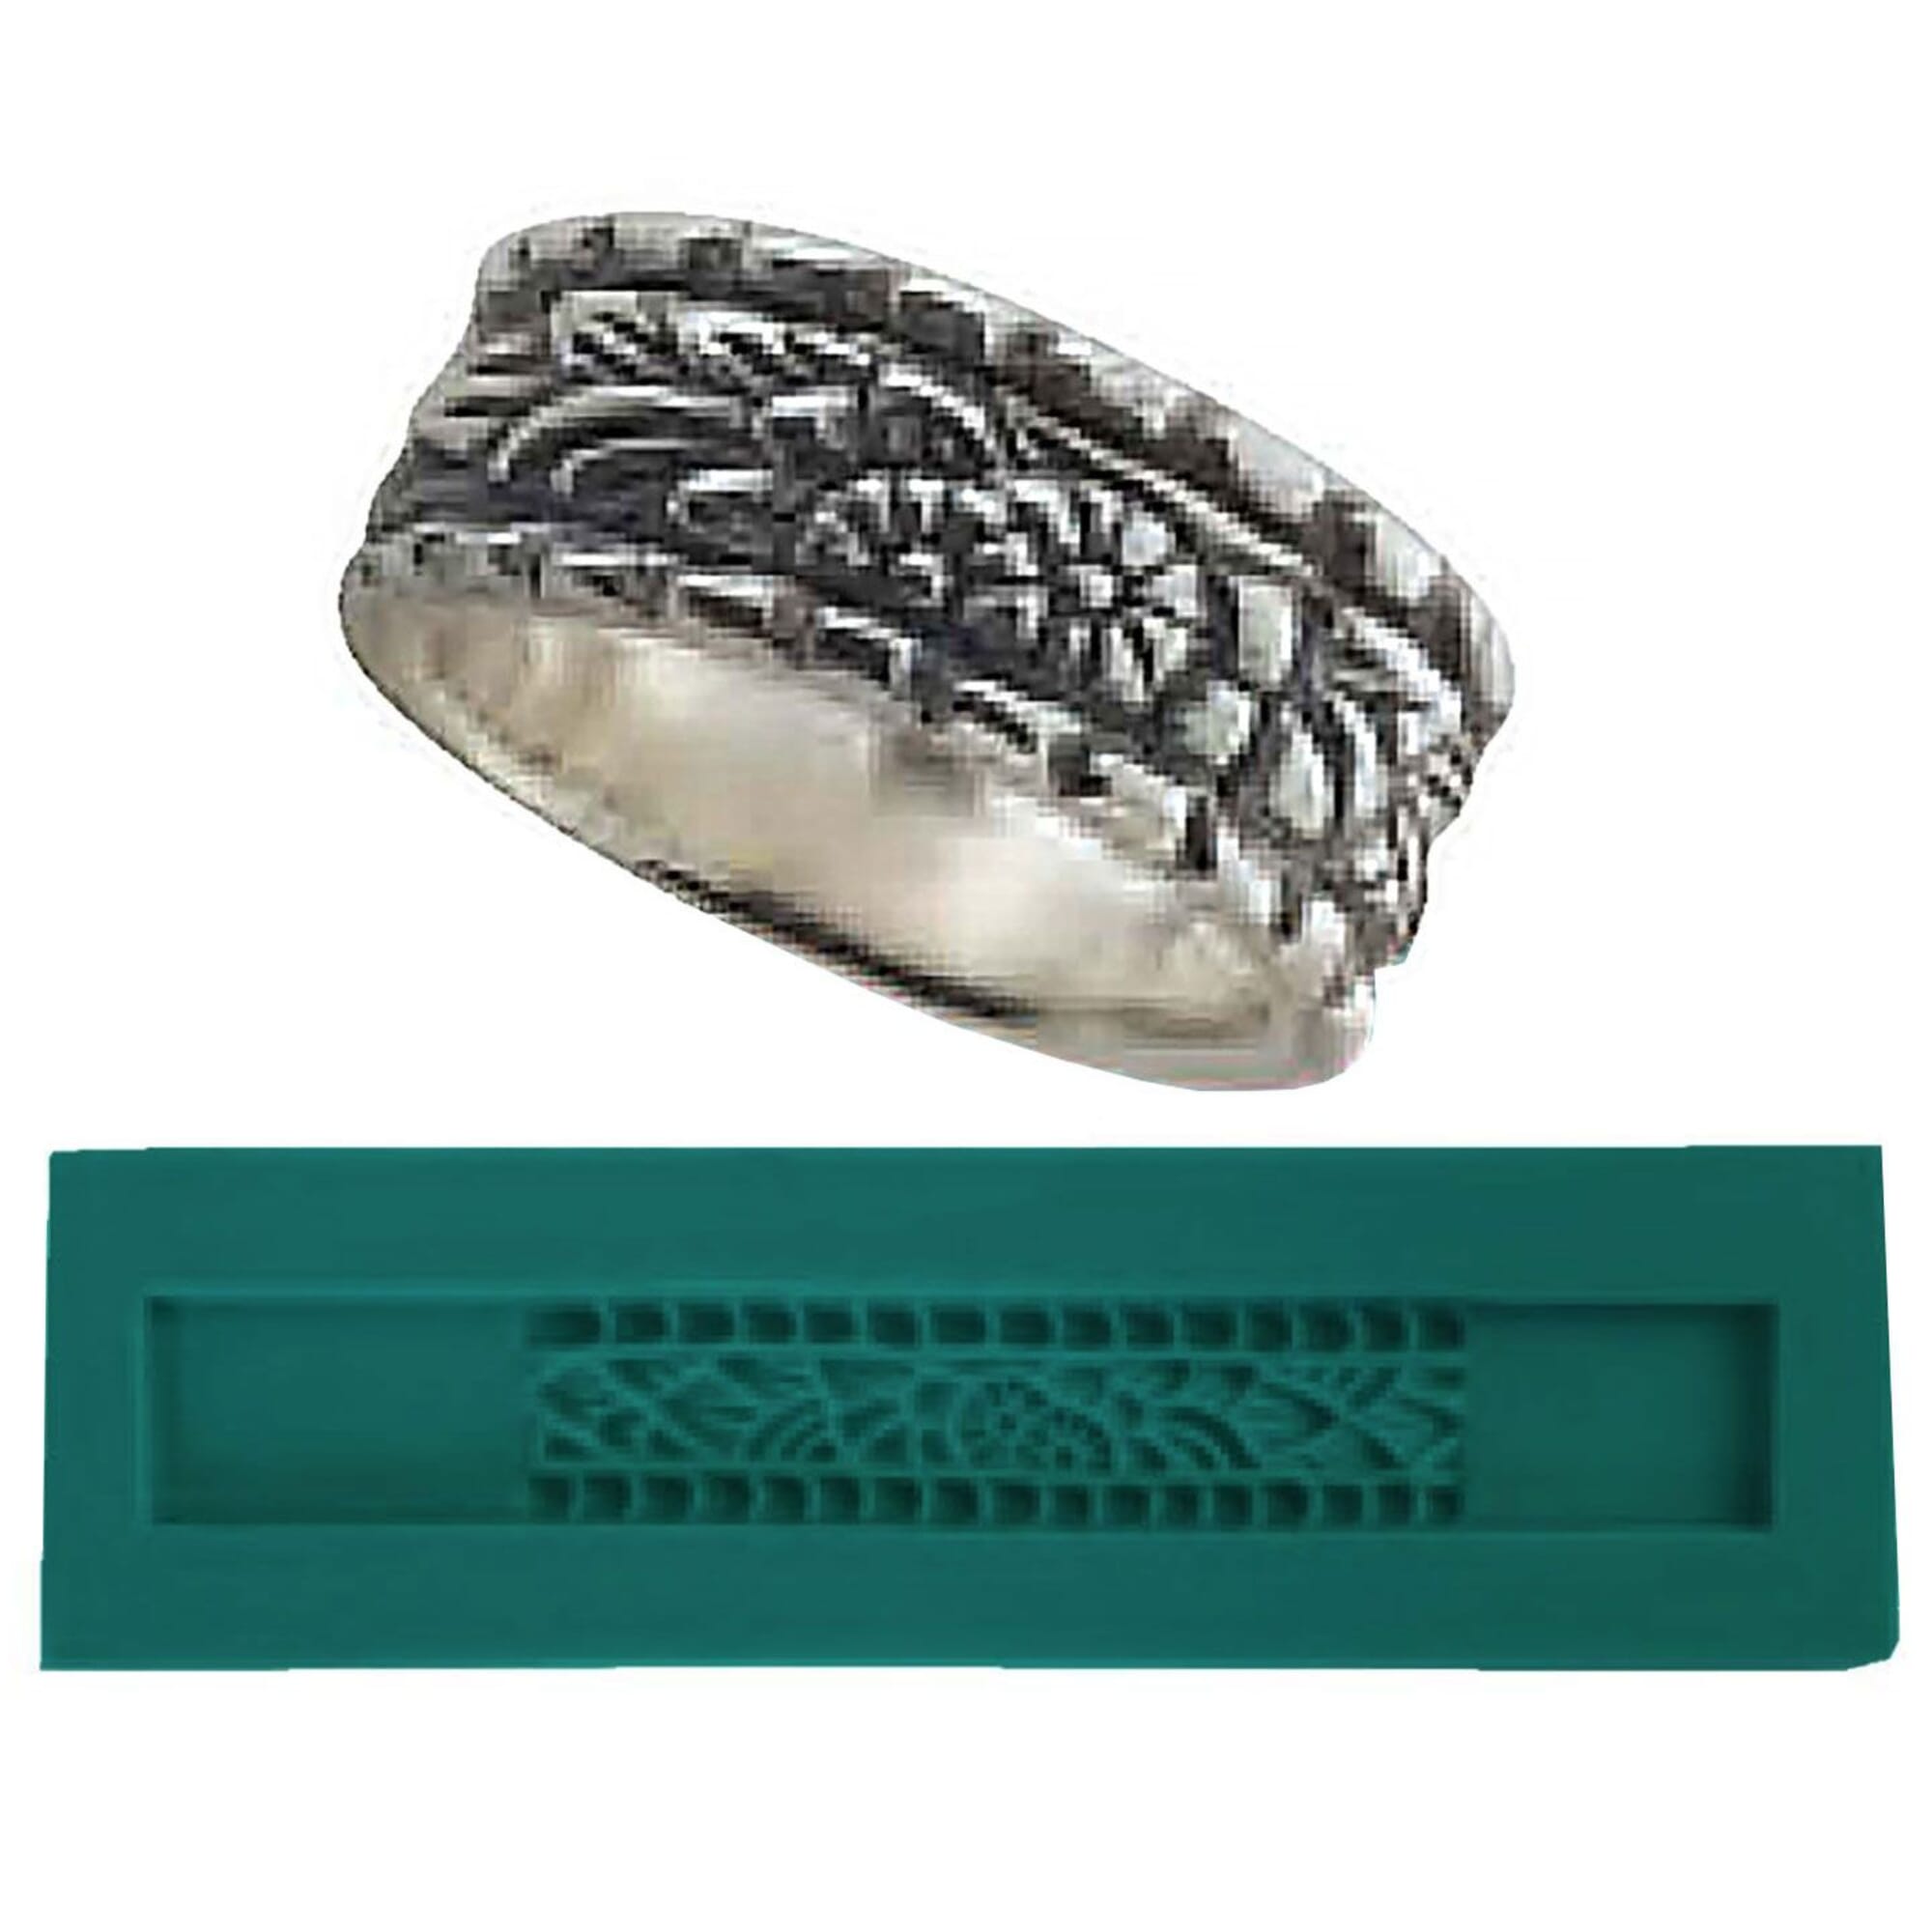 Broken Mountain Peak Silicone Ring Mold, Resin Ring Mold, Jewelry Mold for  Ring, 16mm-18mm Ring Mold 